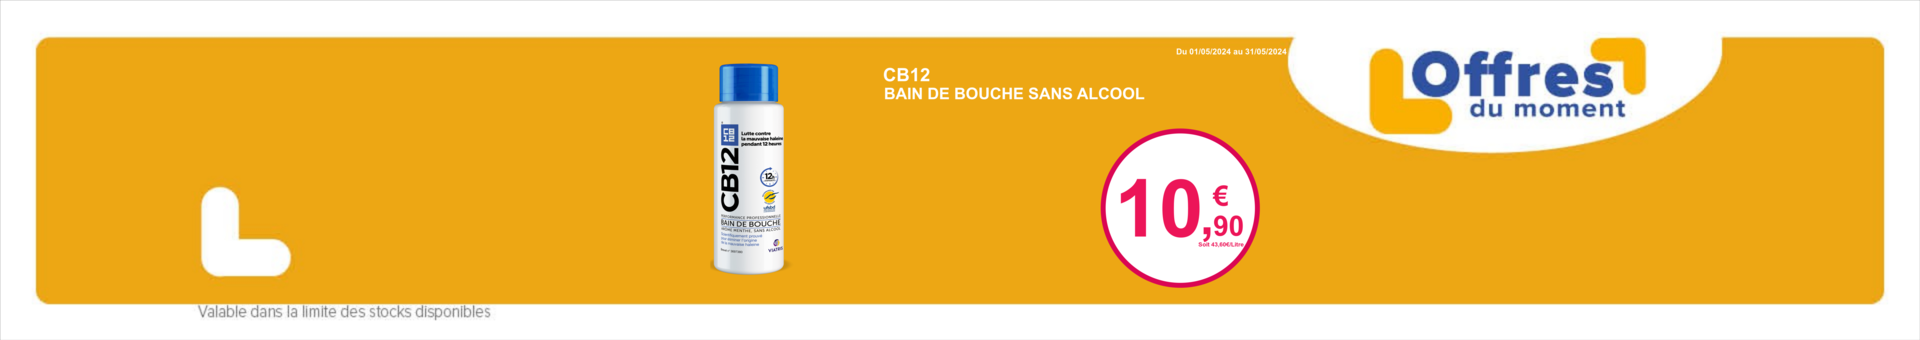 CB12 BAIN DE BOUCHE SOLUTION MENTHE SANS ALCOOL 250ML